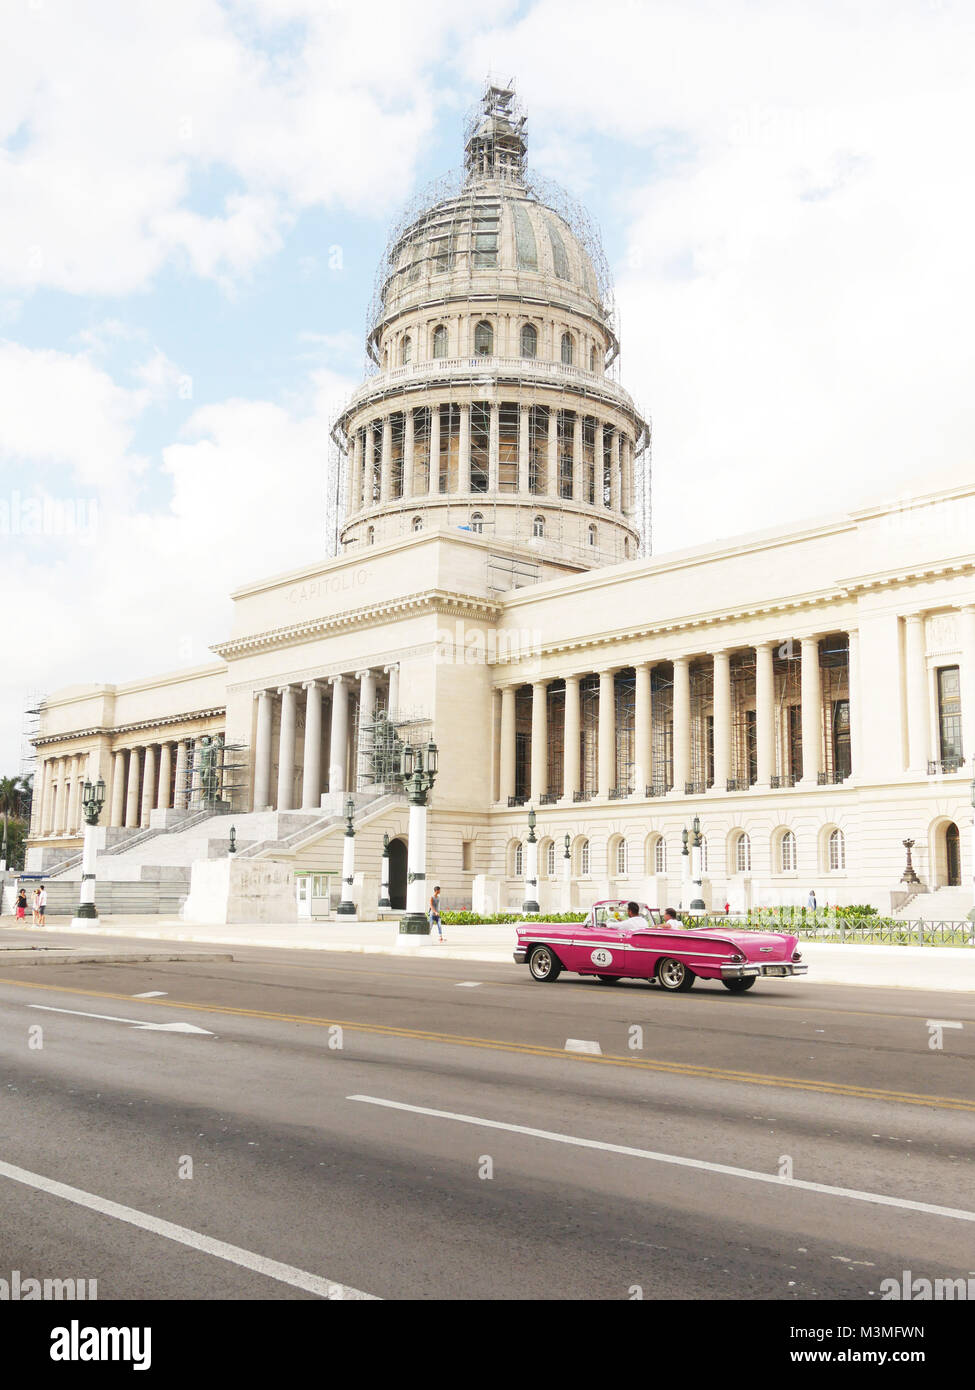 Crusing passed El Capitolio, Havana Stock Photo